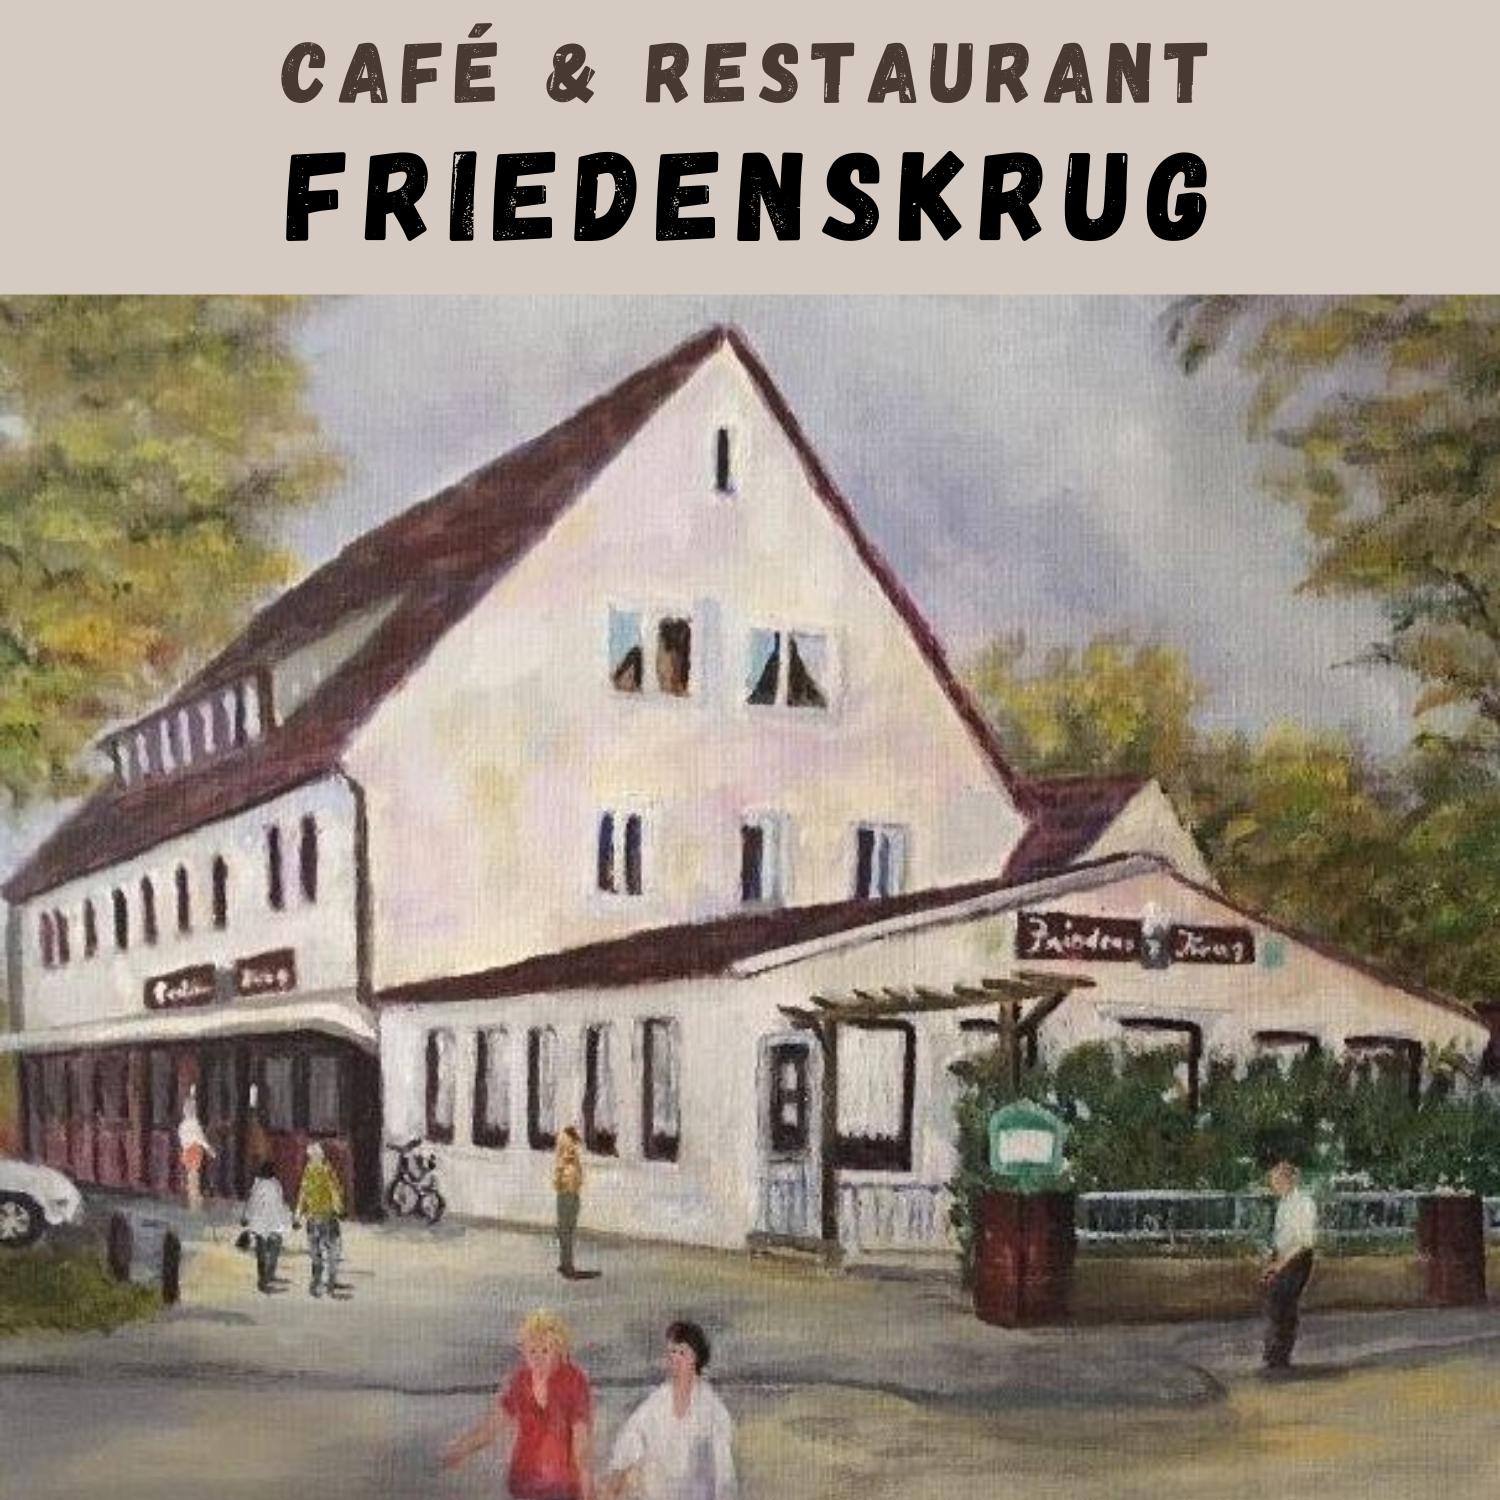 Cafe & Restaurant Friedenskrug